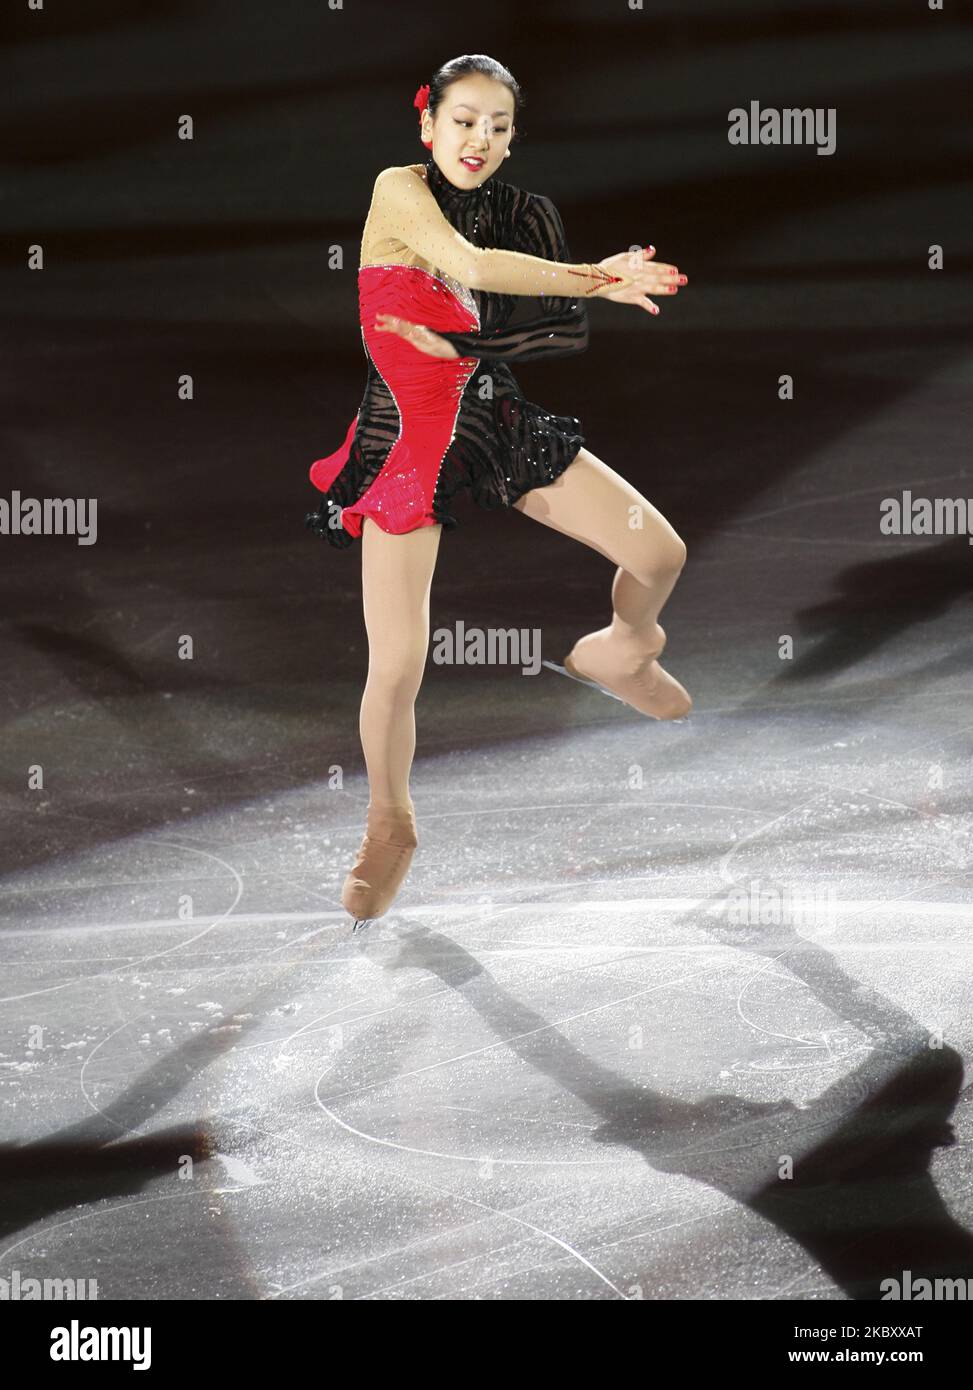 Au Japon, Mao Asada se produit lors du gala de l'exposition finale 2008/2009 du Grand Prix de patinage artistique de l'UIP à Goyang, près de Séoul, en Corée du Sud, sur 14 décembre 2008. (Photo de Seung-il Ryu/NurPhoto) Banque D'Images